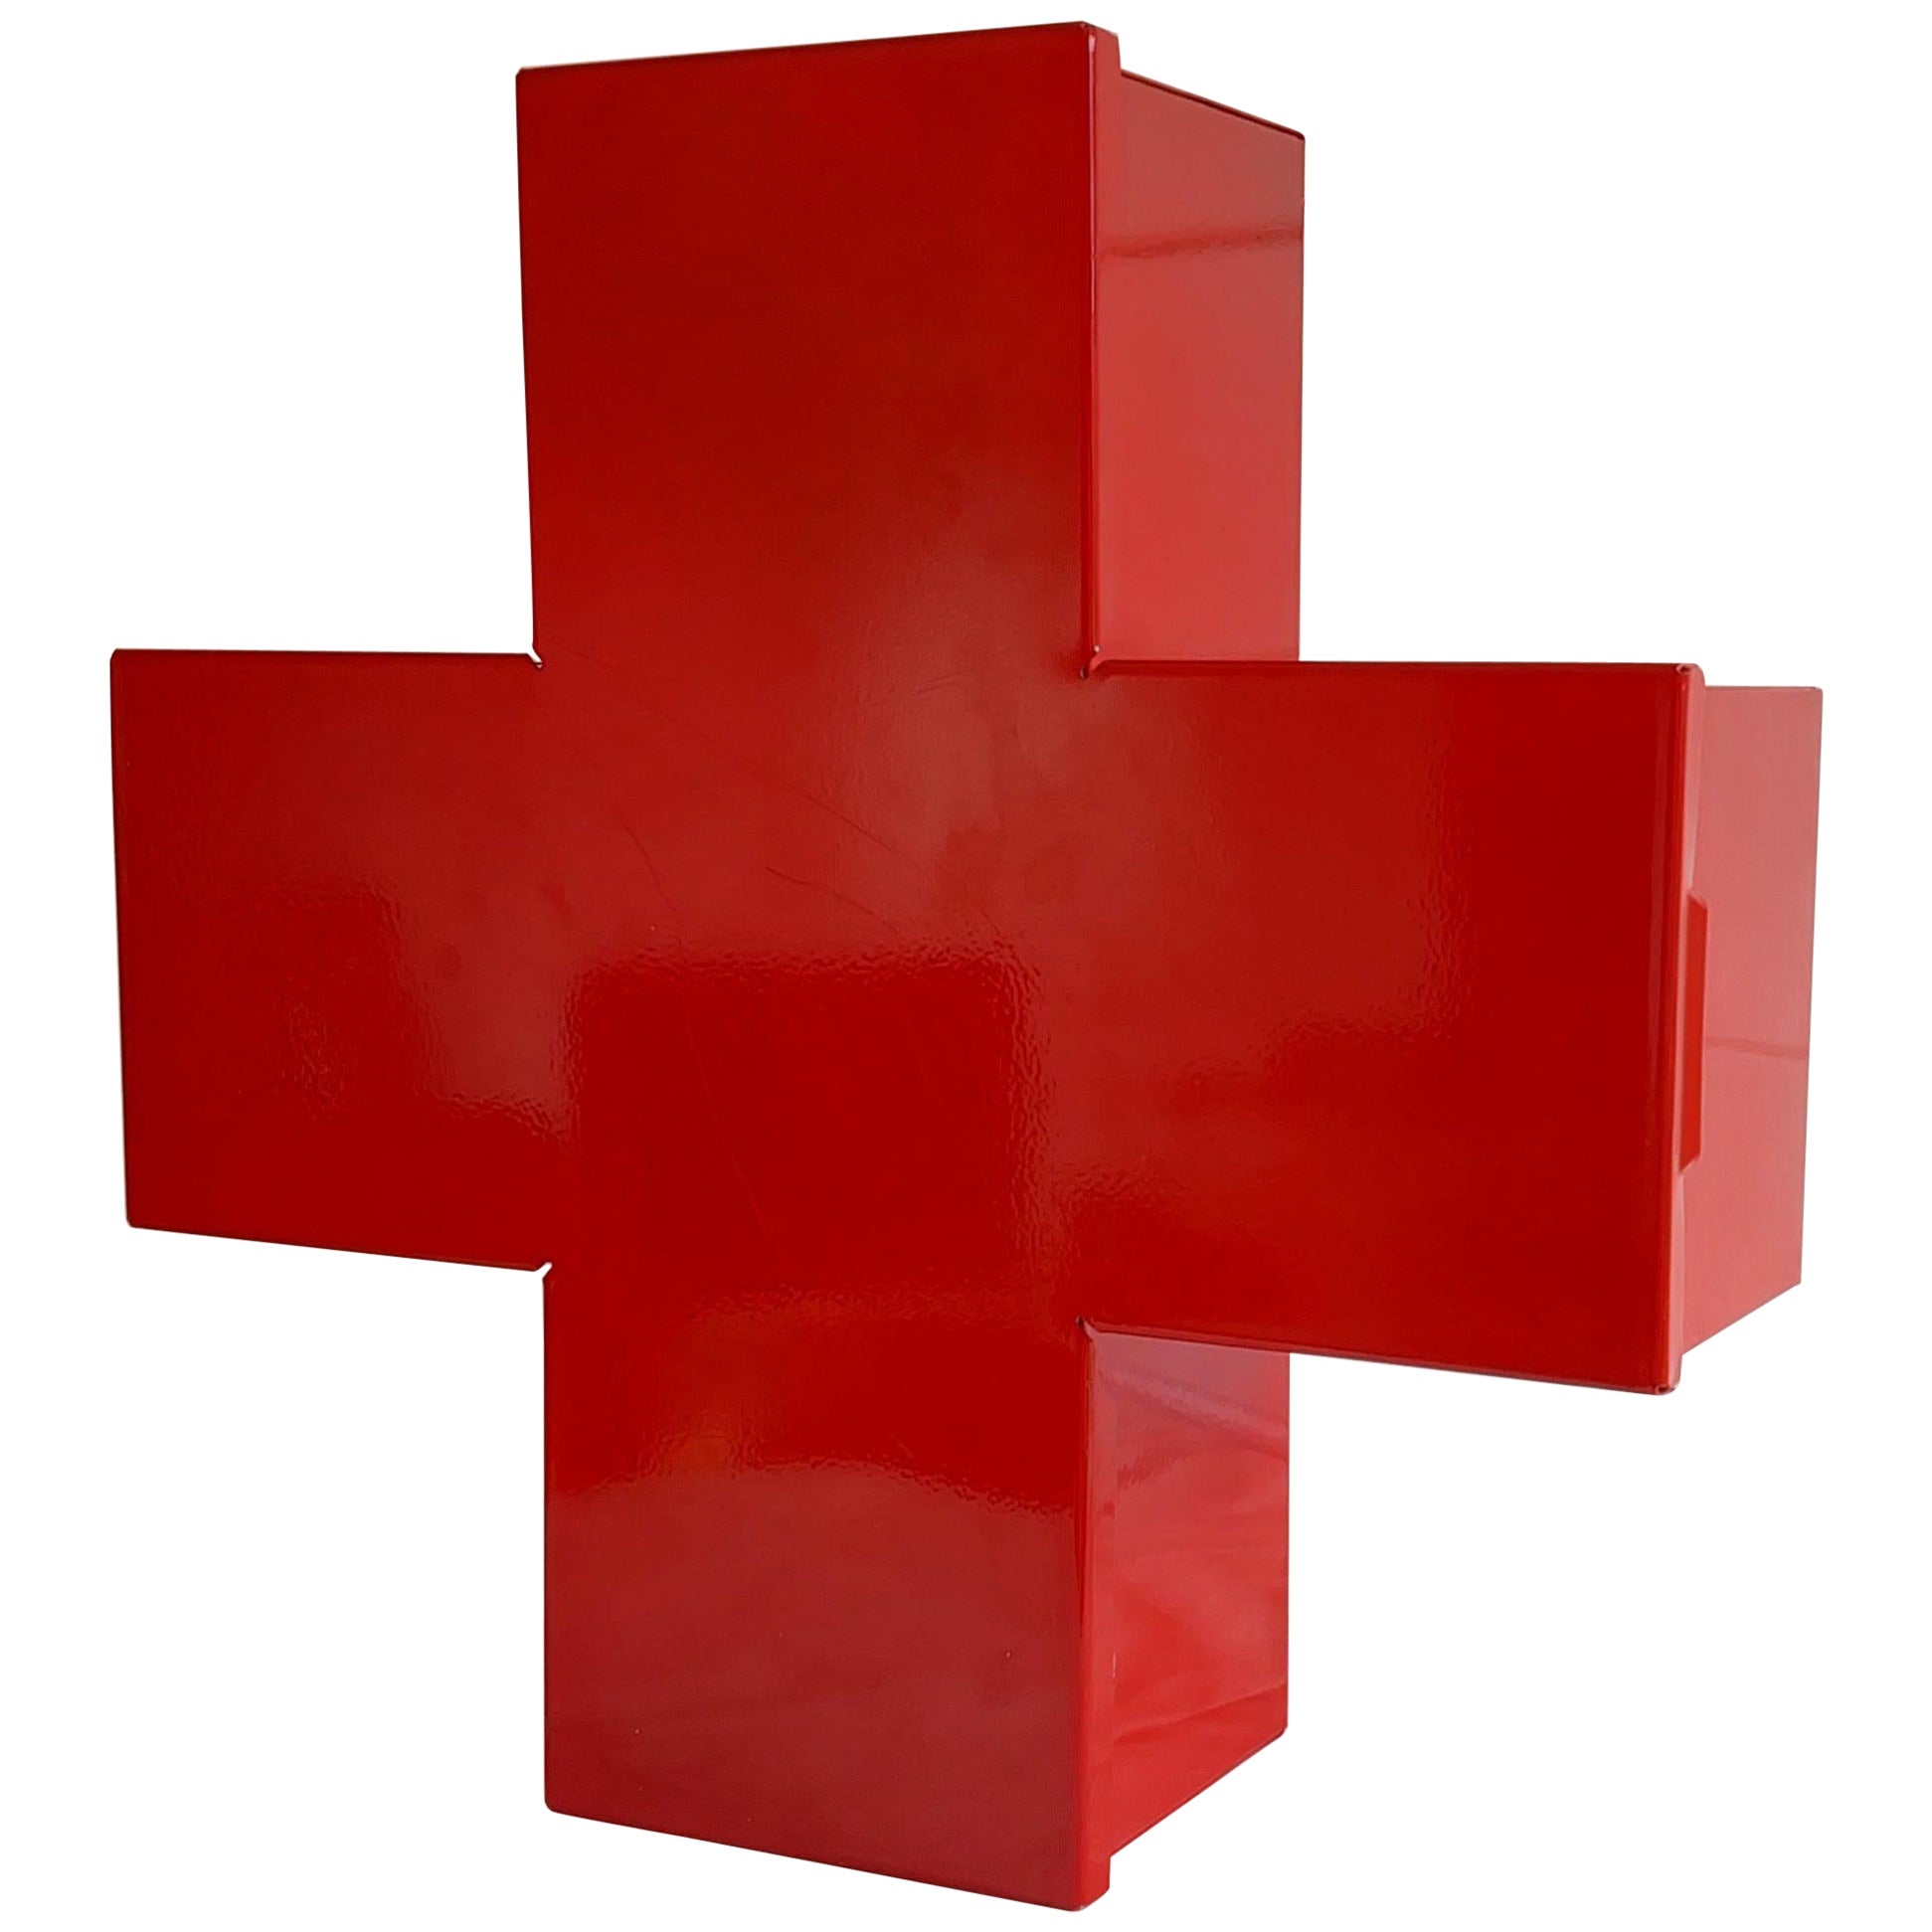 Roter Metallkreuz-Wandschrank 1st Aid Medicine Box, Thomas Eriksson-Stil 1990er Jahre